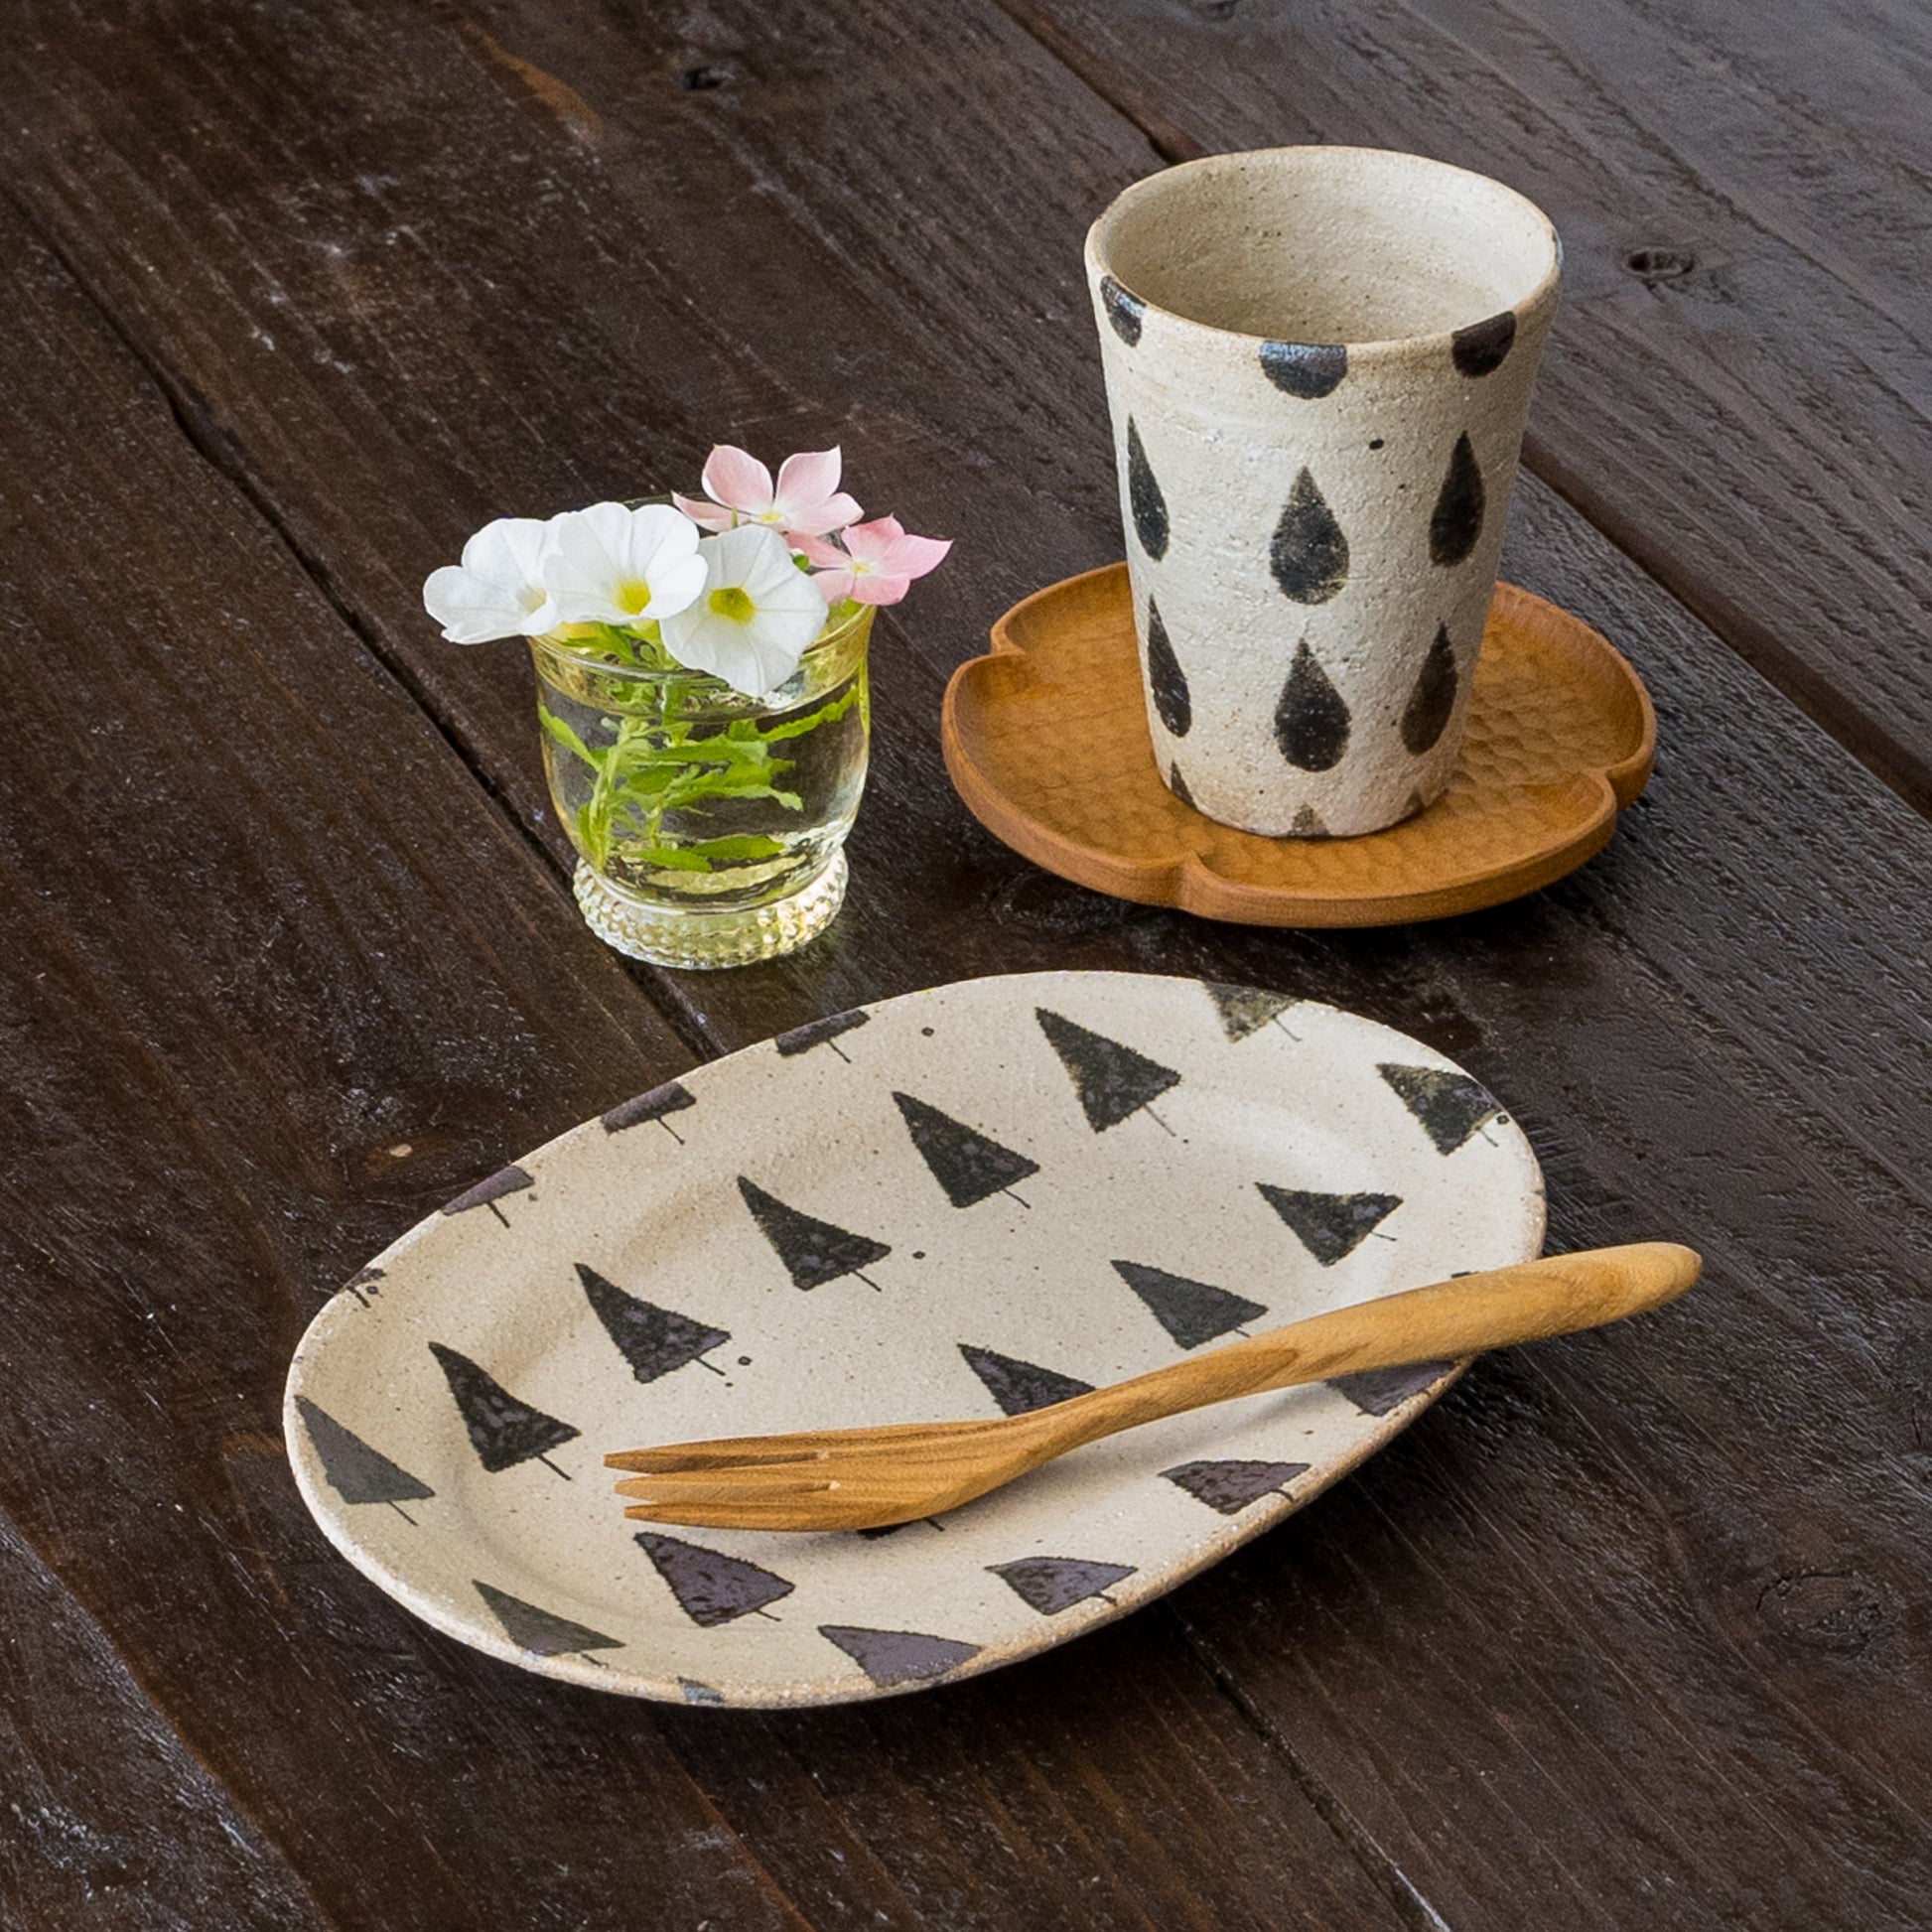 おうちでカフェ気分を楽しめる岡村朝子さんのオーバル皿とフリーカップ